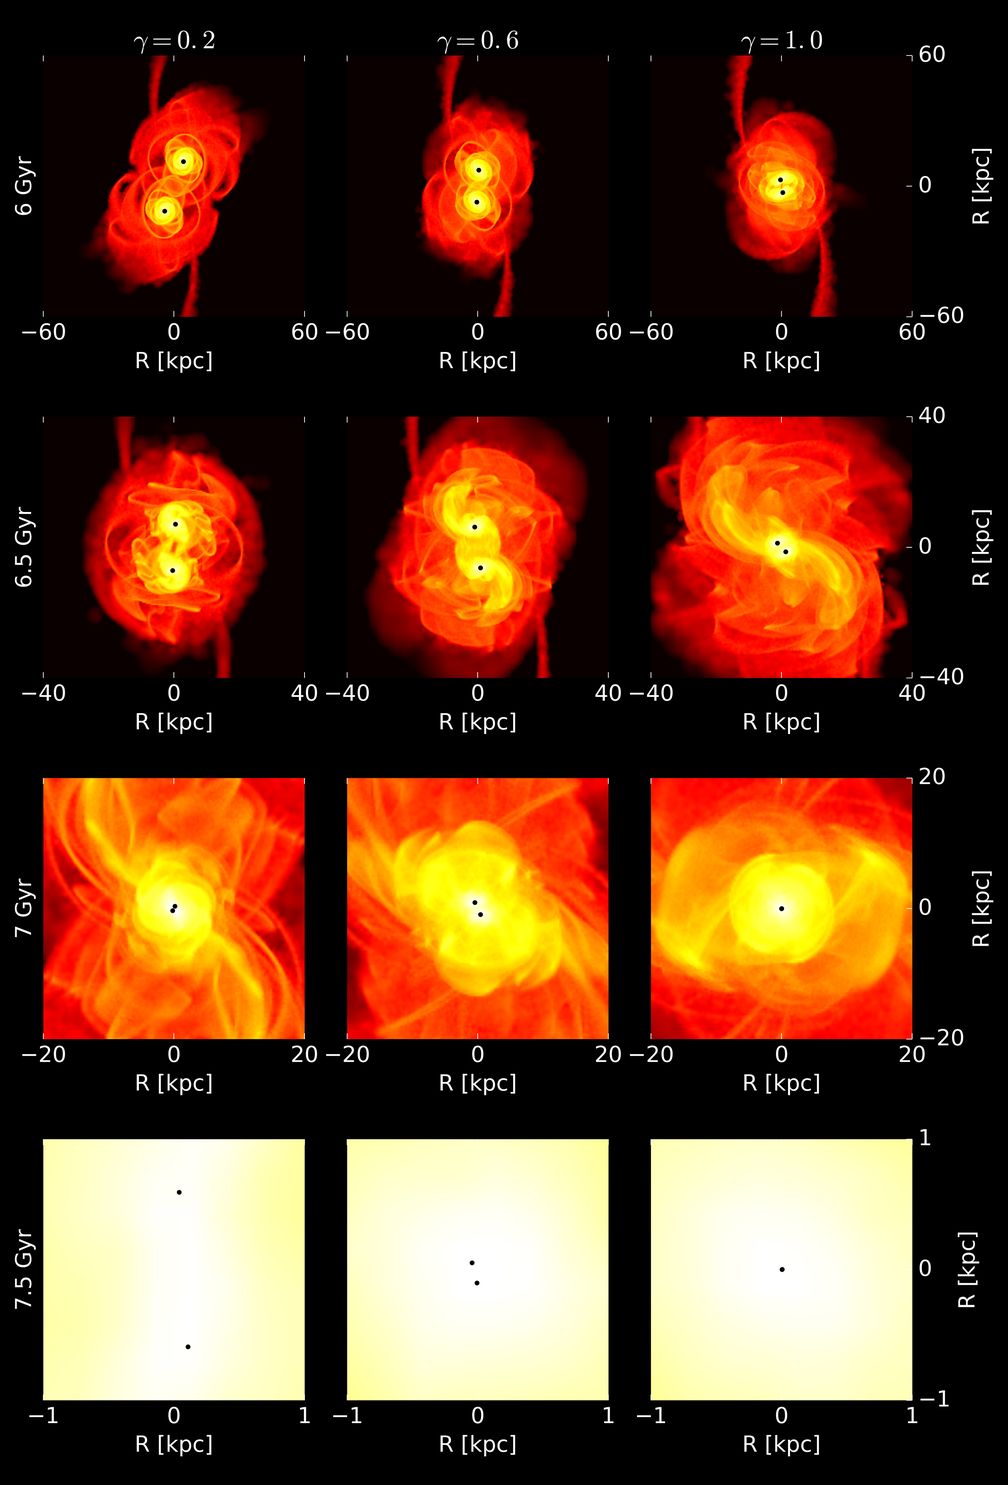 Momentaufnahmen der Simulation von 120 Millionen Teilchen zweier zusammenwachsender Zwerggalaxien, die jeweils ein Schwarzes Loch enthalten und zwischen 6 und 7,5 Milliarden Jahre alt sind.
Quelle: UZH (idw)